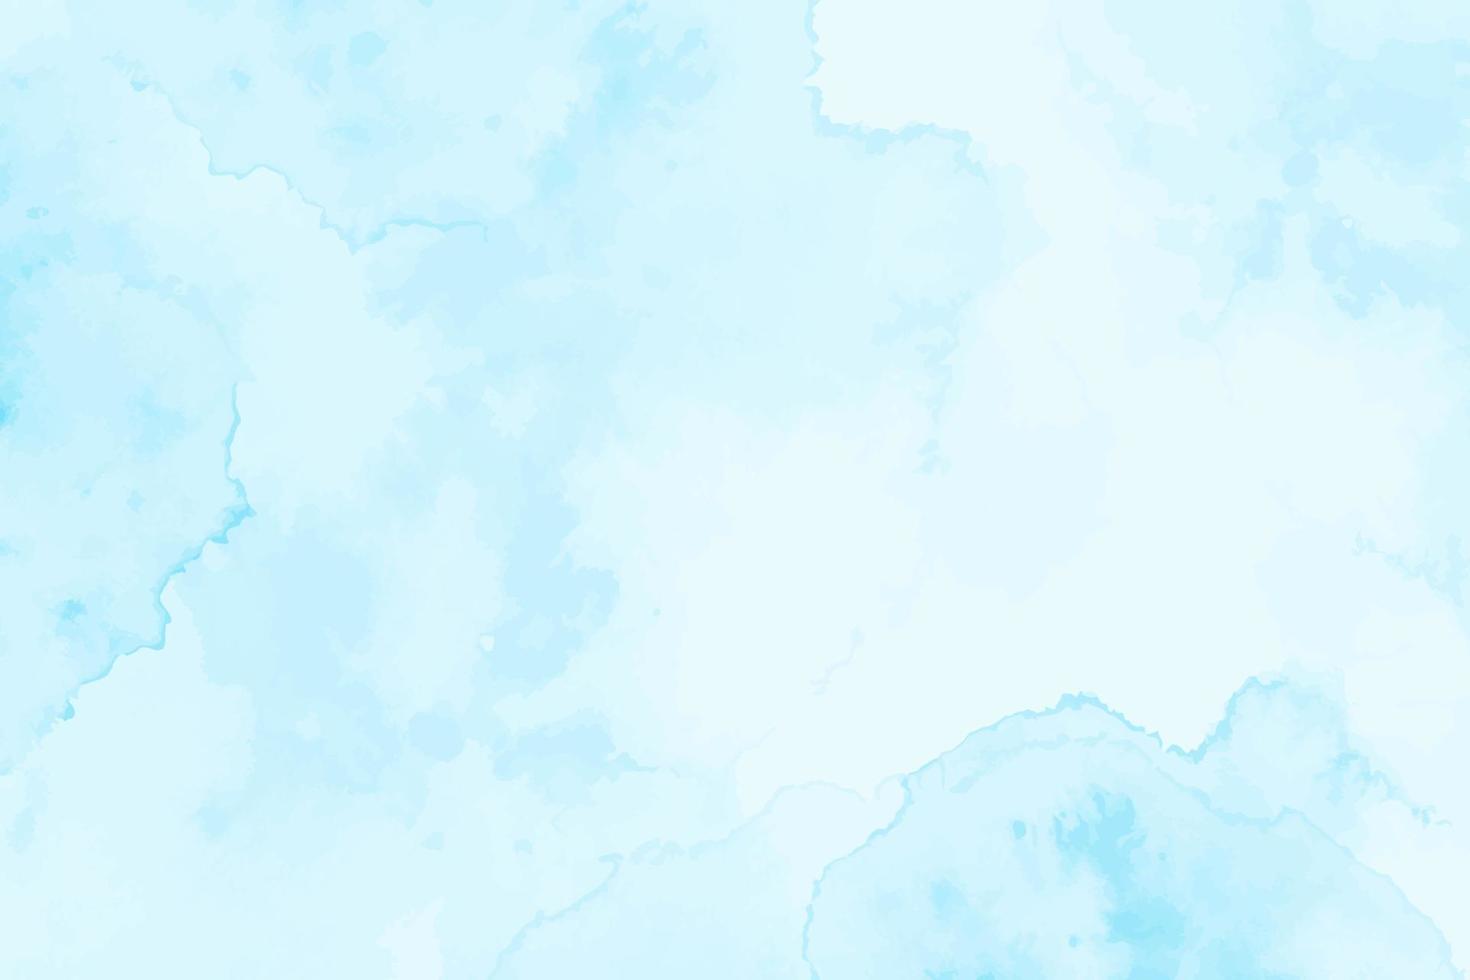 sfondo astratto blu acquerello vettoriale. struttura della carta della spruzzata della vernice di lerciume vettore